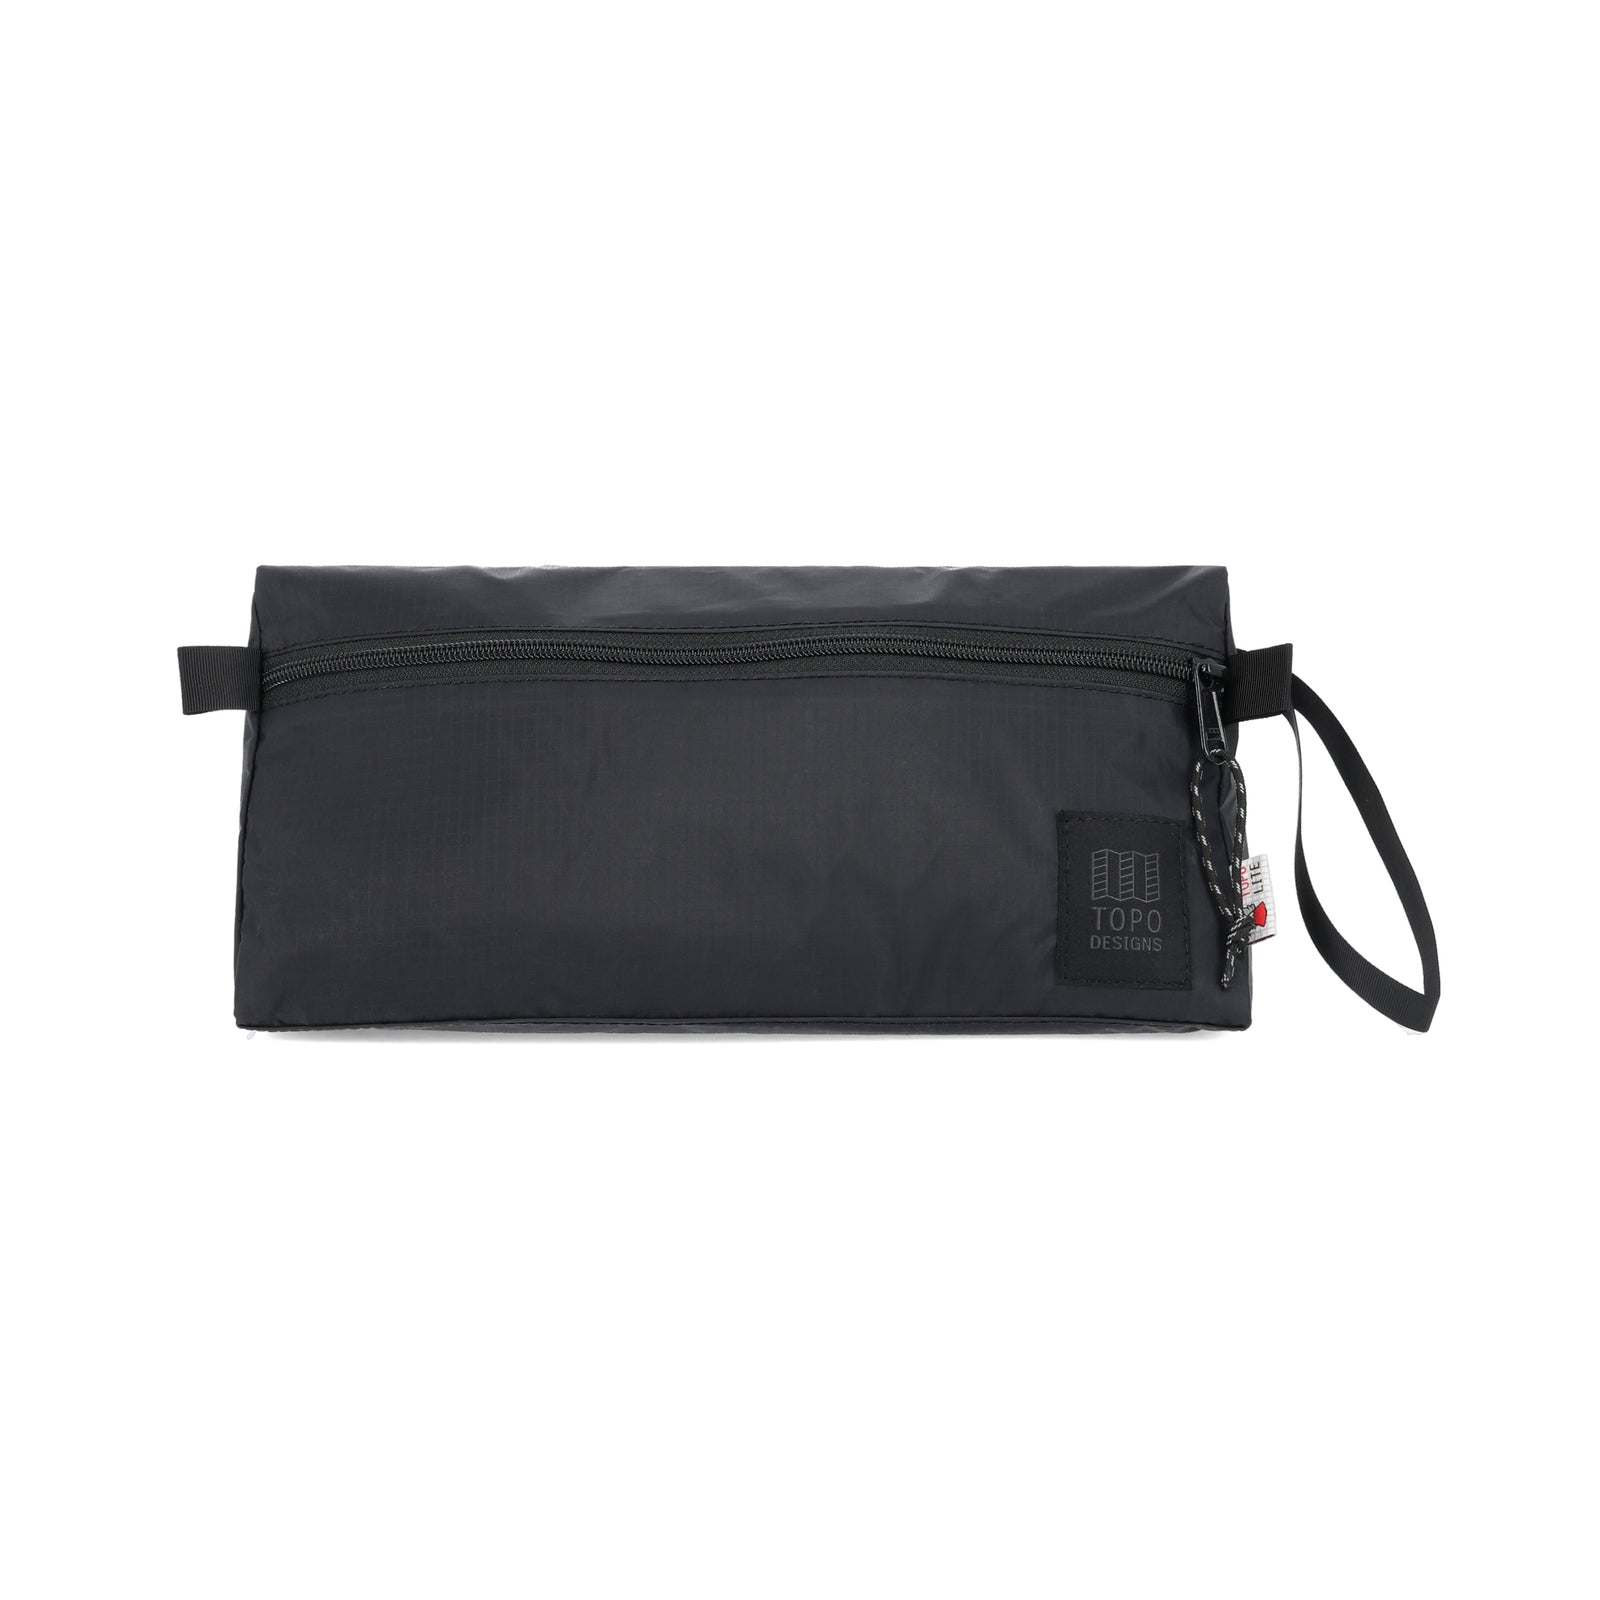 Topo Designs TopoLite Dopp Kit ultralight toiletry bag for travel in "black"